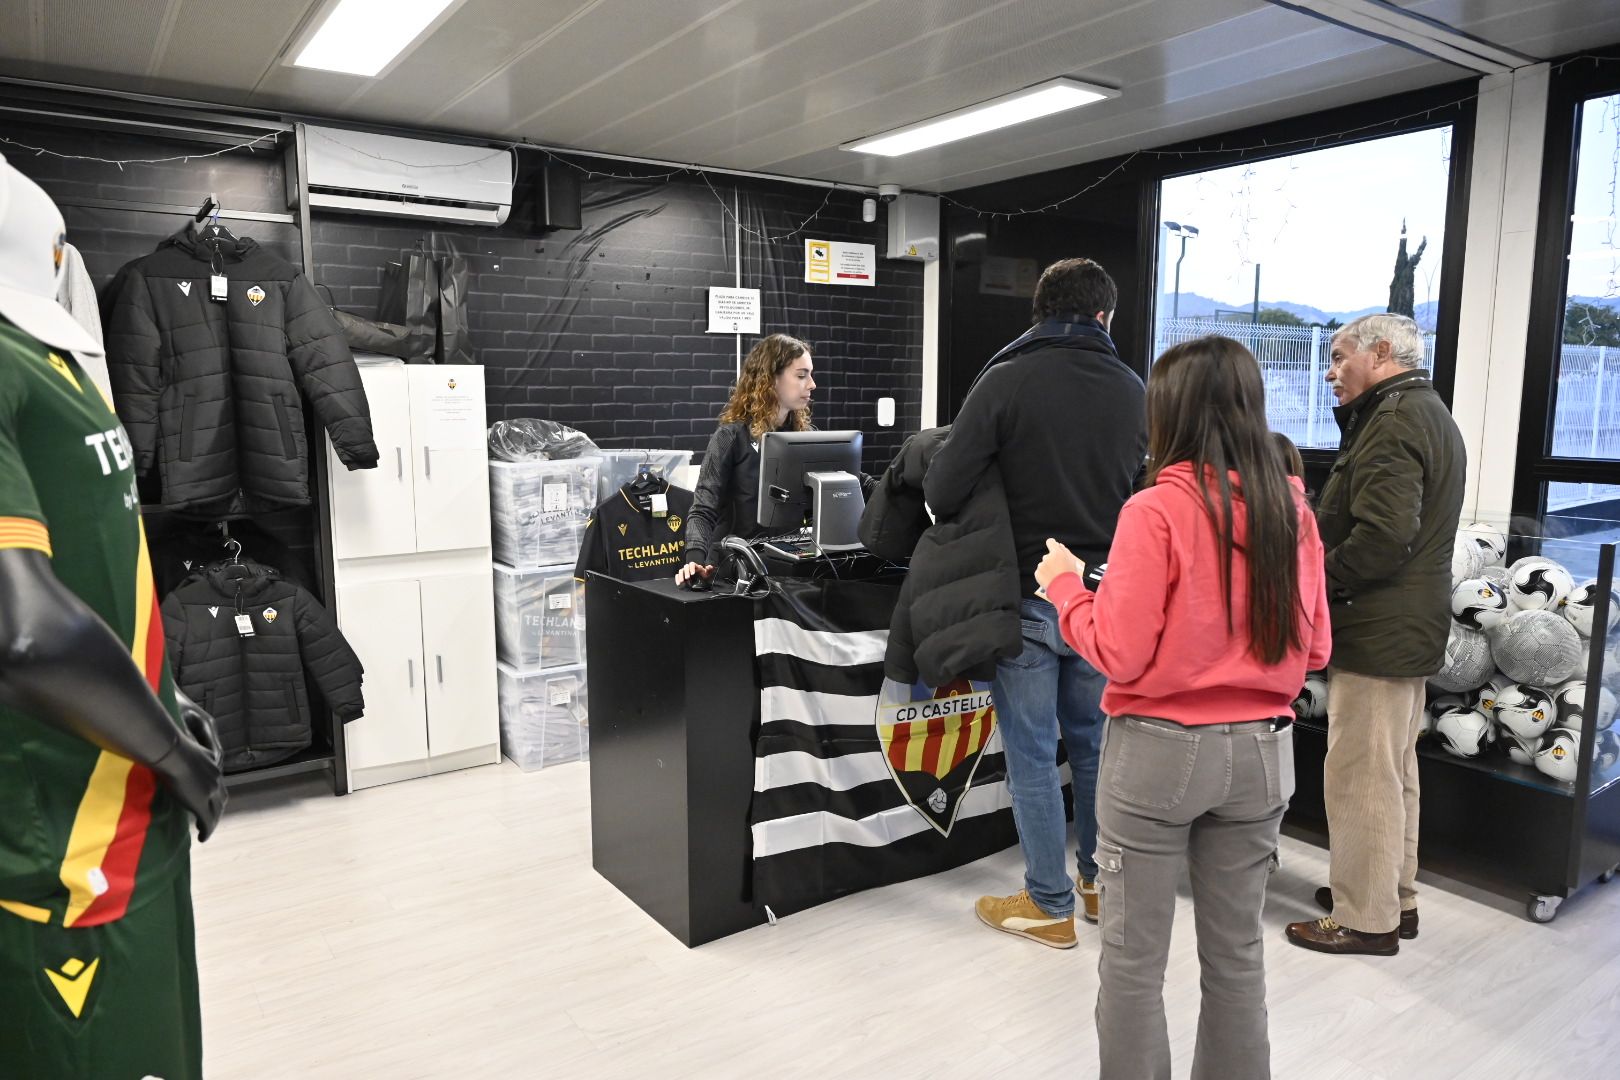 Galería de imágenes: Jornada de puertas abiertas del CD Castellón